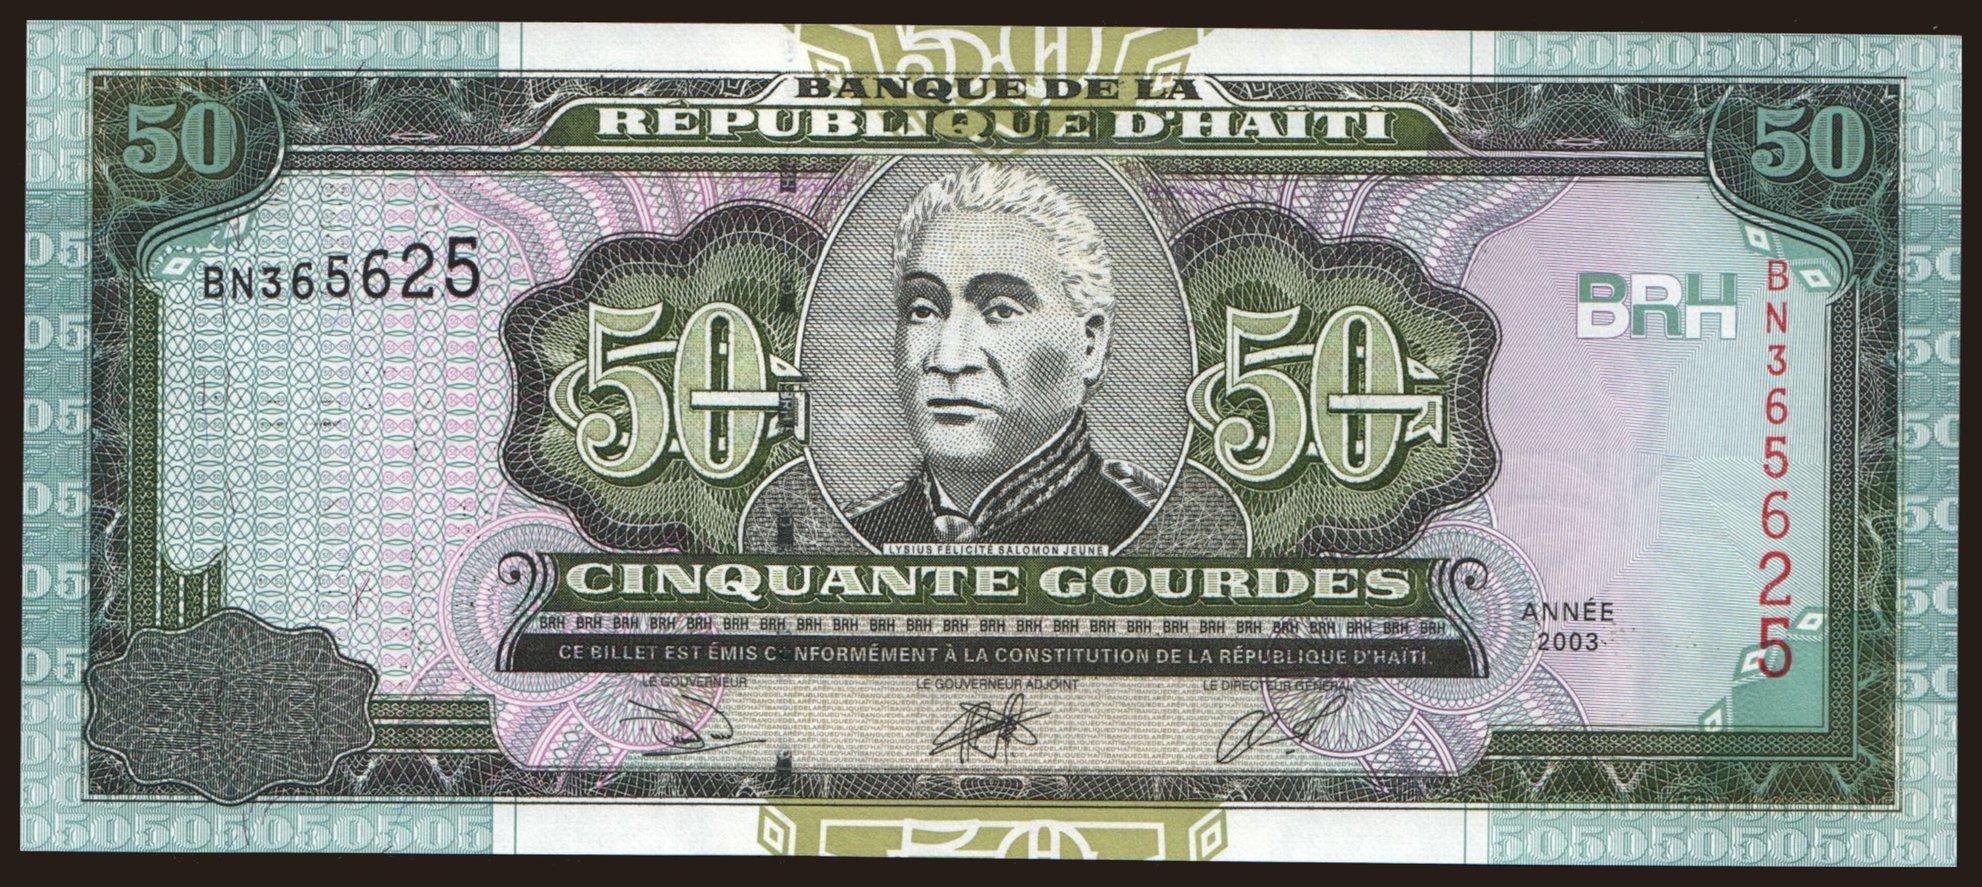 50 gourdes, 2003